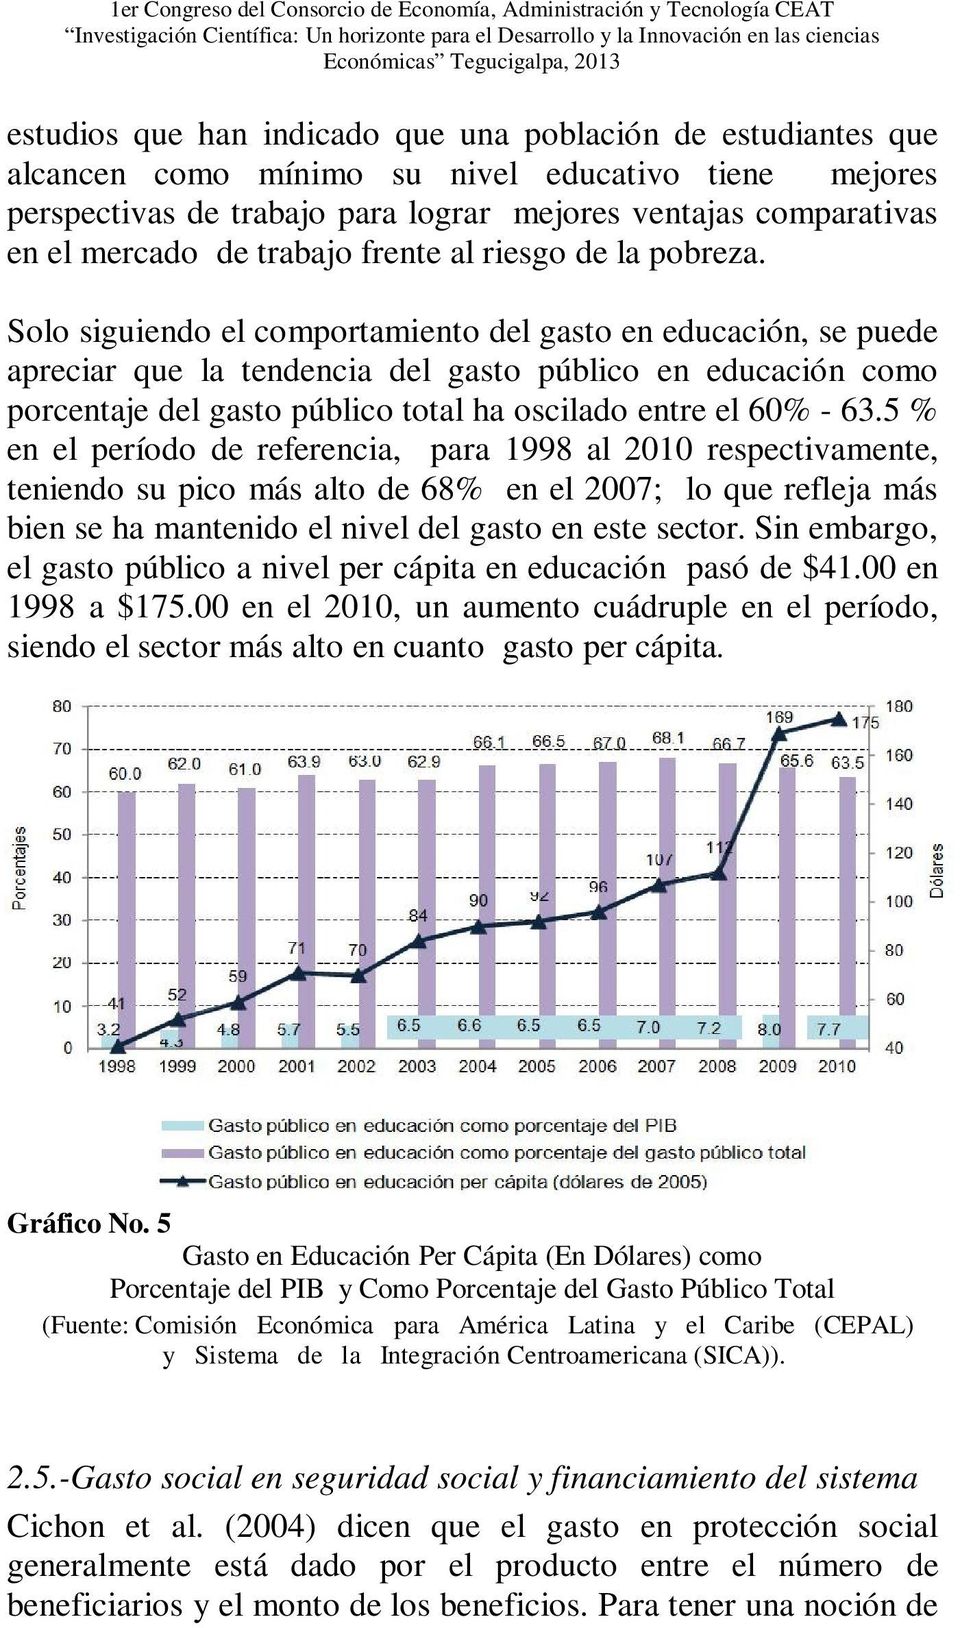 Solo siguiendo el comportamiento del gasto en educación, se puede apreciar que la tendencia del gasto público en educación como porcentaje del gasto público total ha oscilado entre el 60% - 63.